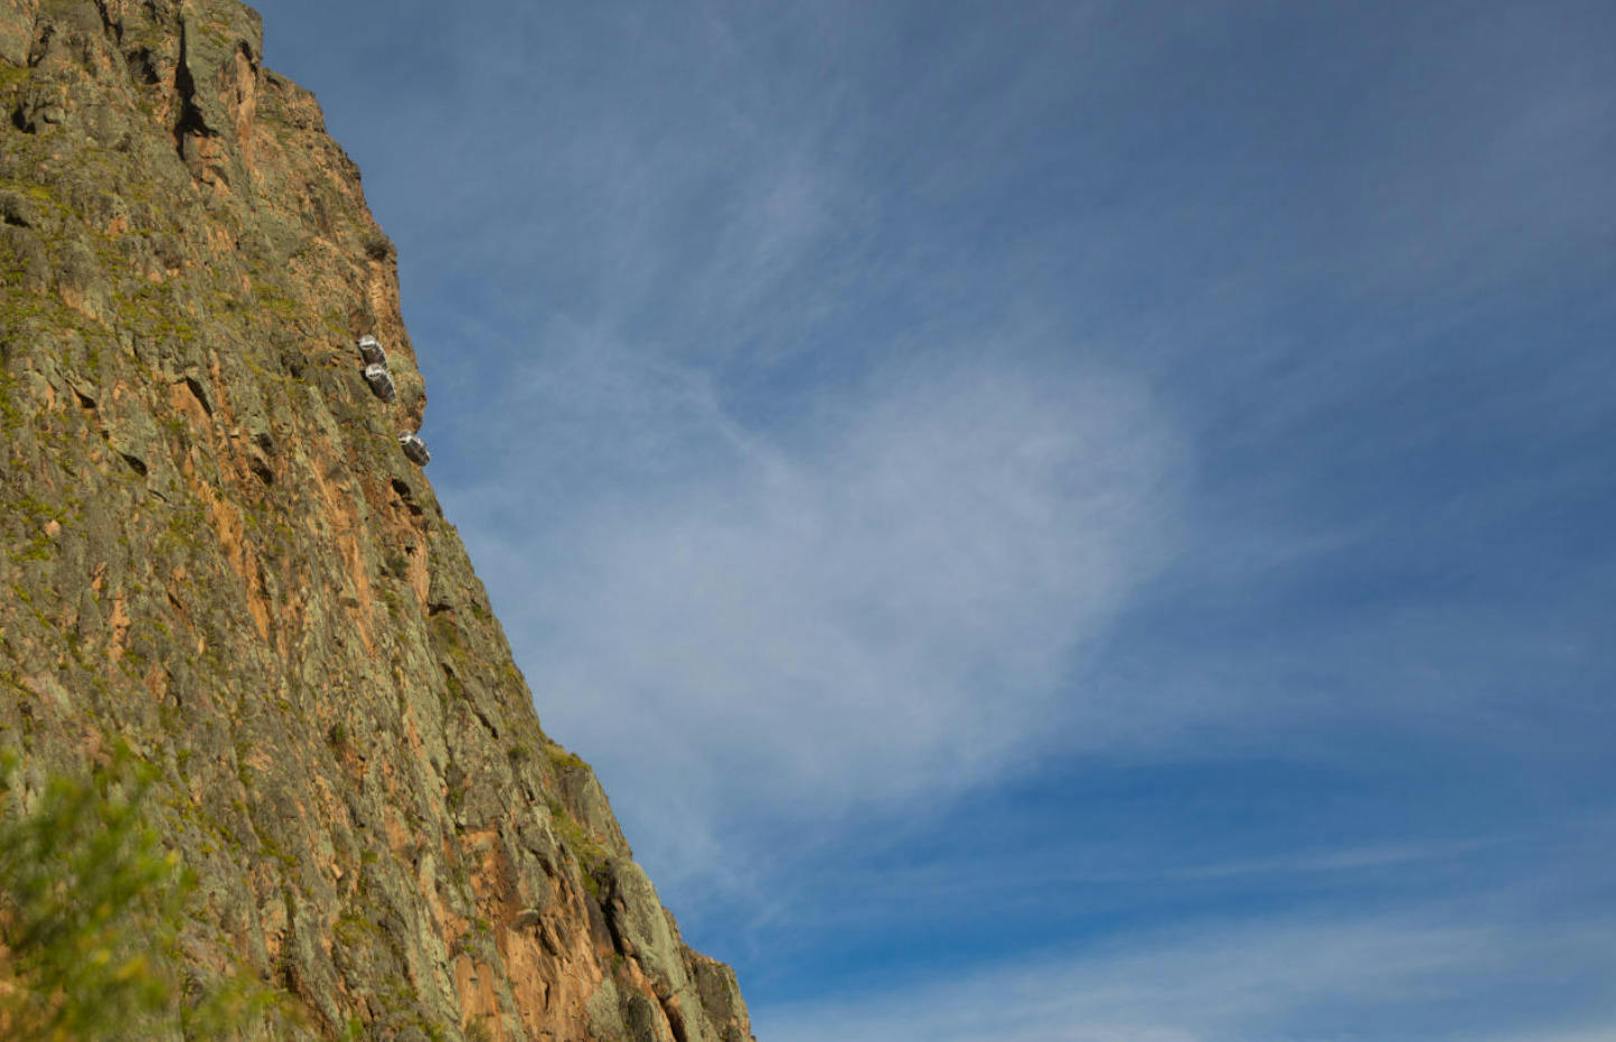 Hier sehen Sie eine Felswand in Peru. Aber was hängt da in luftiger Höhe?